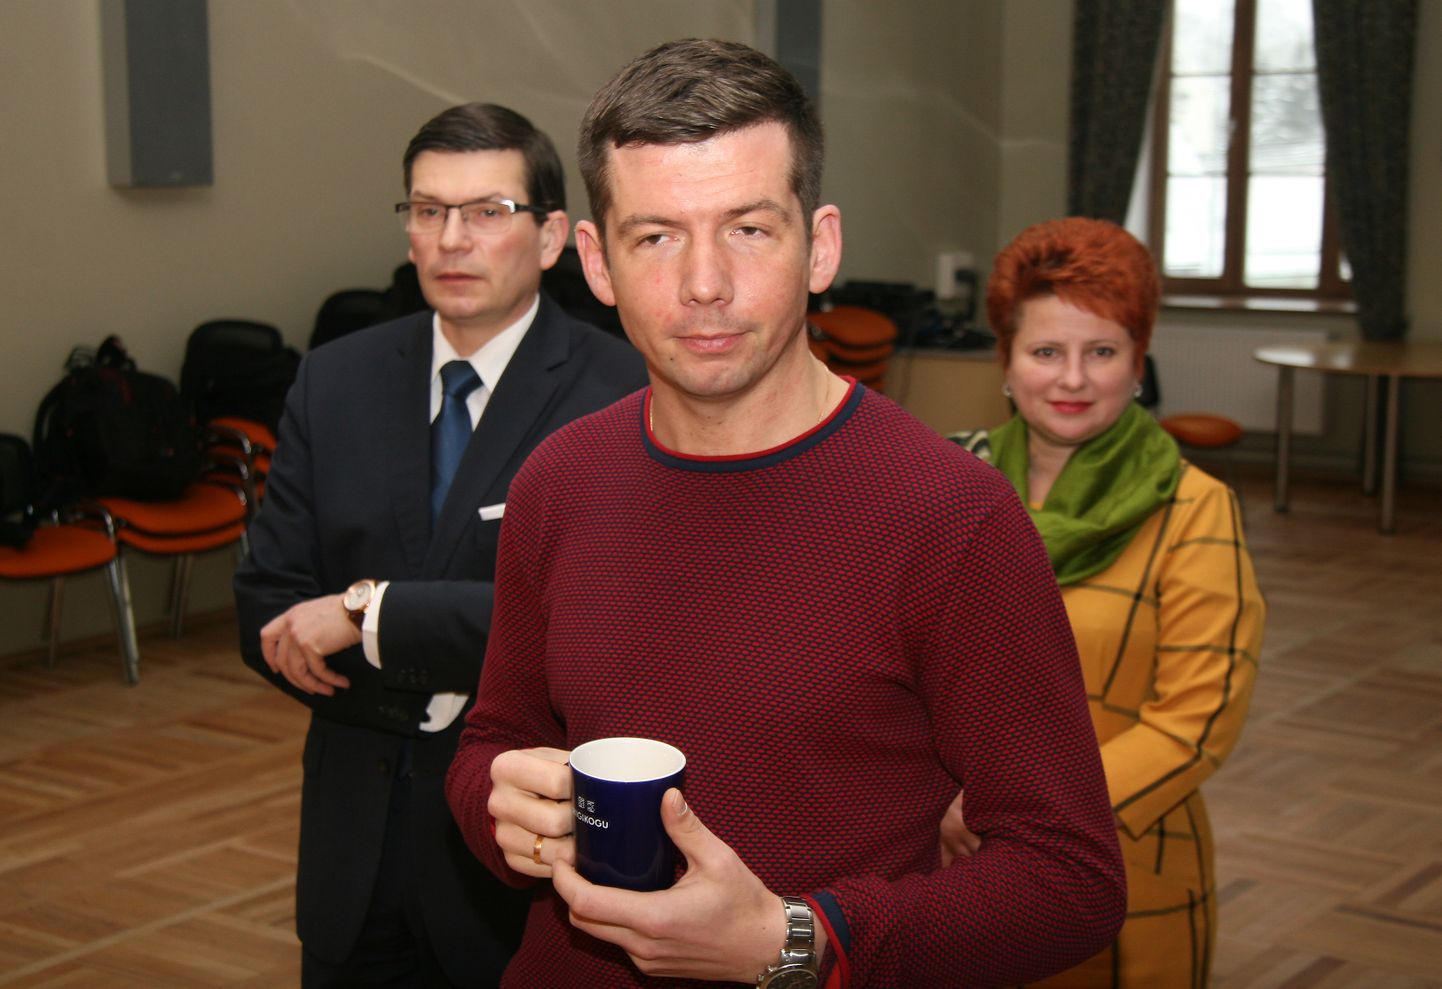 Kevad 2019. Max Kaur (vasakul) oli siis Martin Repinski (esiplaanil) vallavalitsuse liige, nagu ka Viktoria Tsventarnaja. Lahkudes pärast valimisi riigikogusse, toetas Repinski Kauri vallavanema kohal. Nüüd tahab teda aga maha võtta.